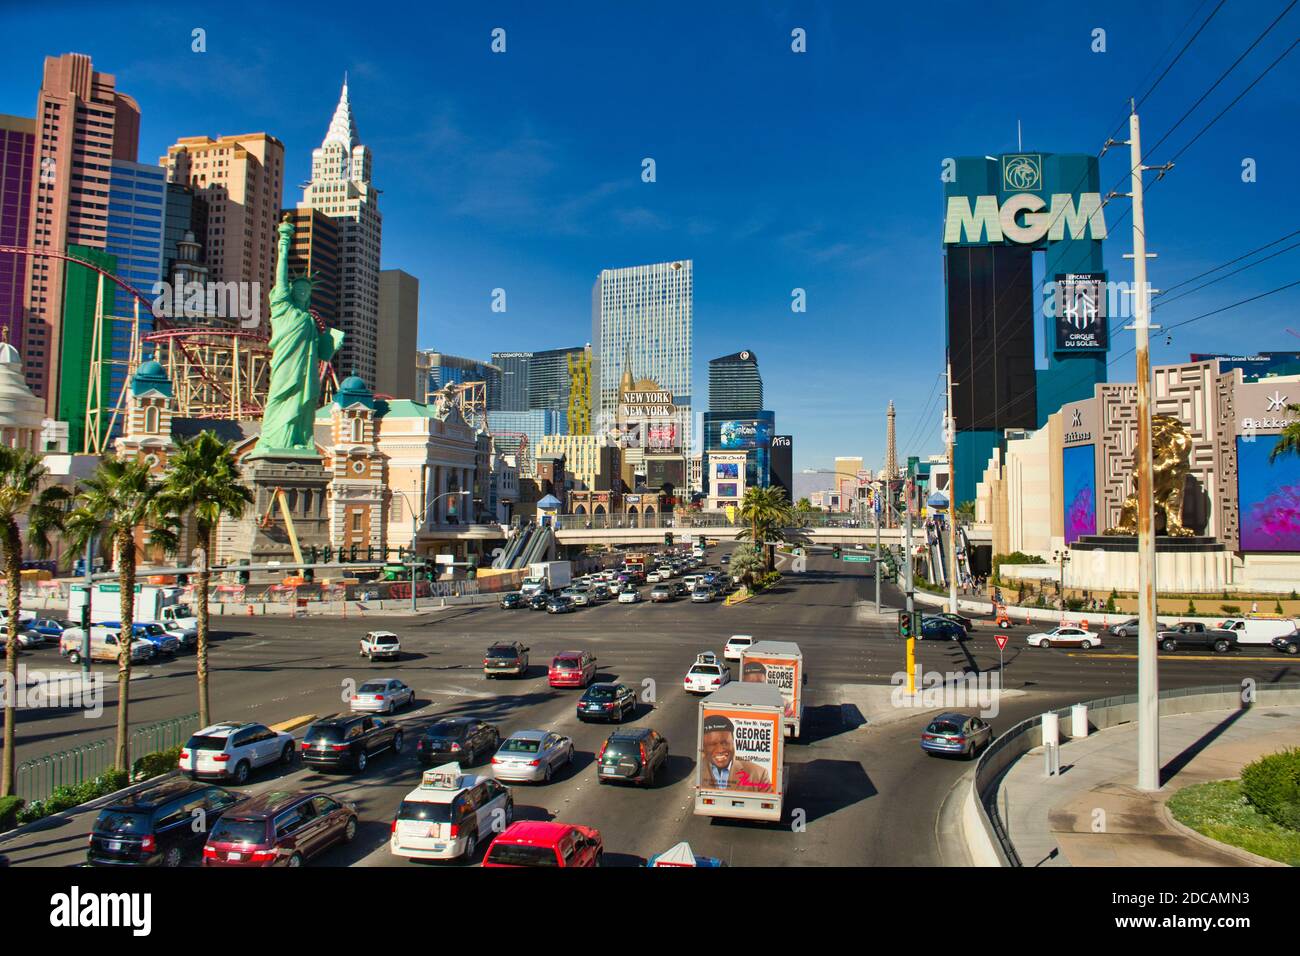 LAS VEGAS, STATI UNITI - 08 novembre 2013: Las Vegas, USA, 2013 novembre: Vista sulla striscia di Las Vegas, Nevada, con MGM, New York, Hakkasan e aria Foto Stock